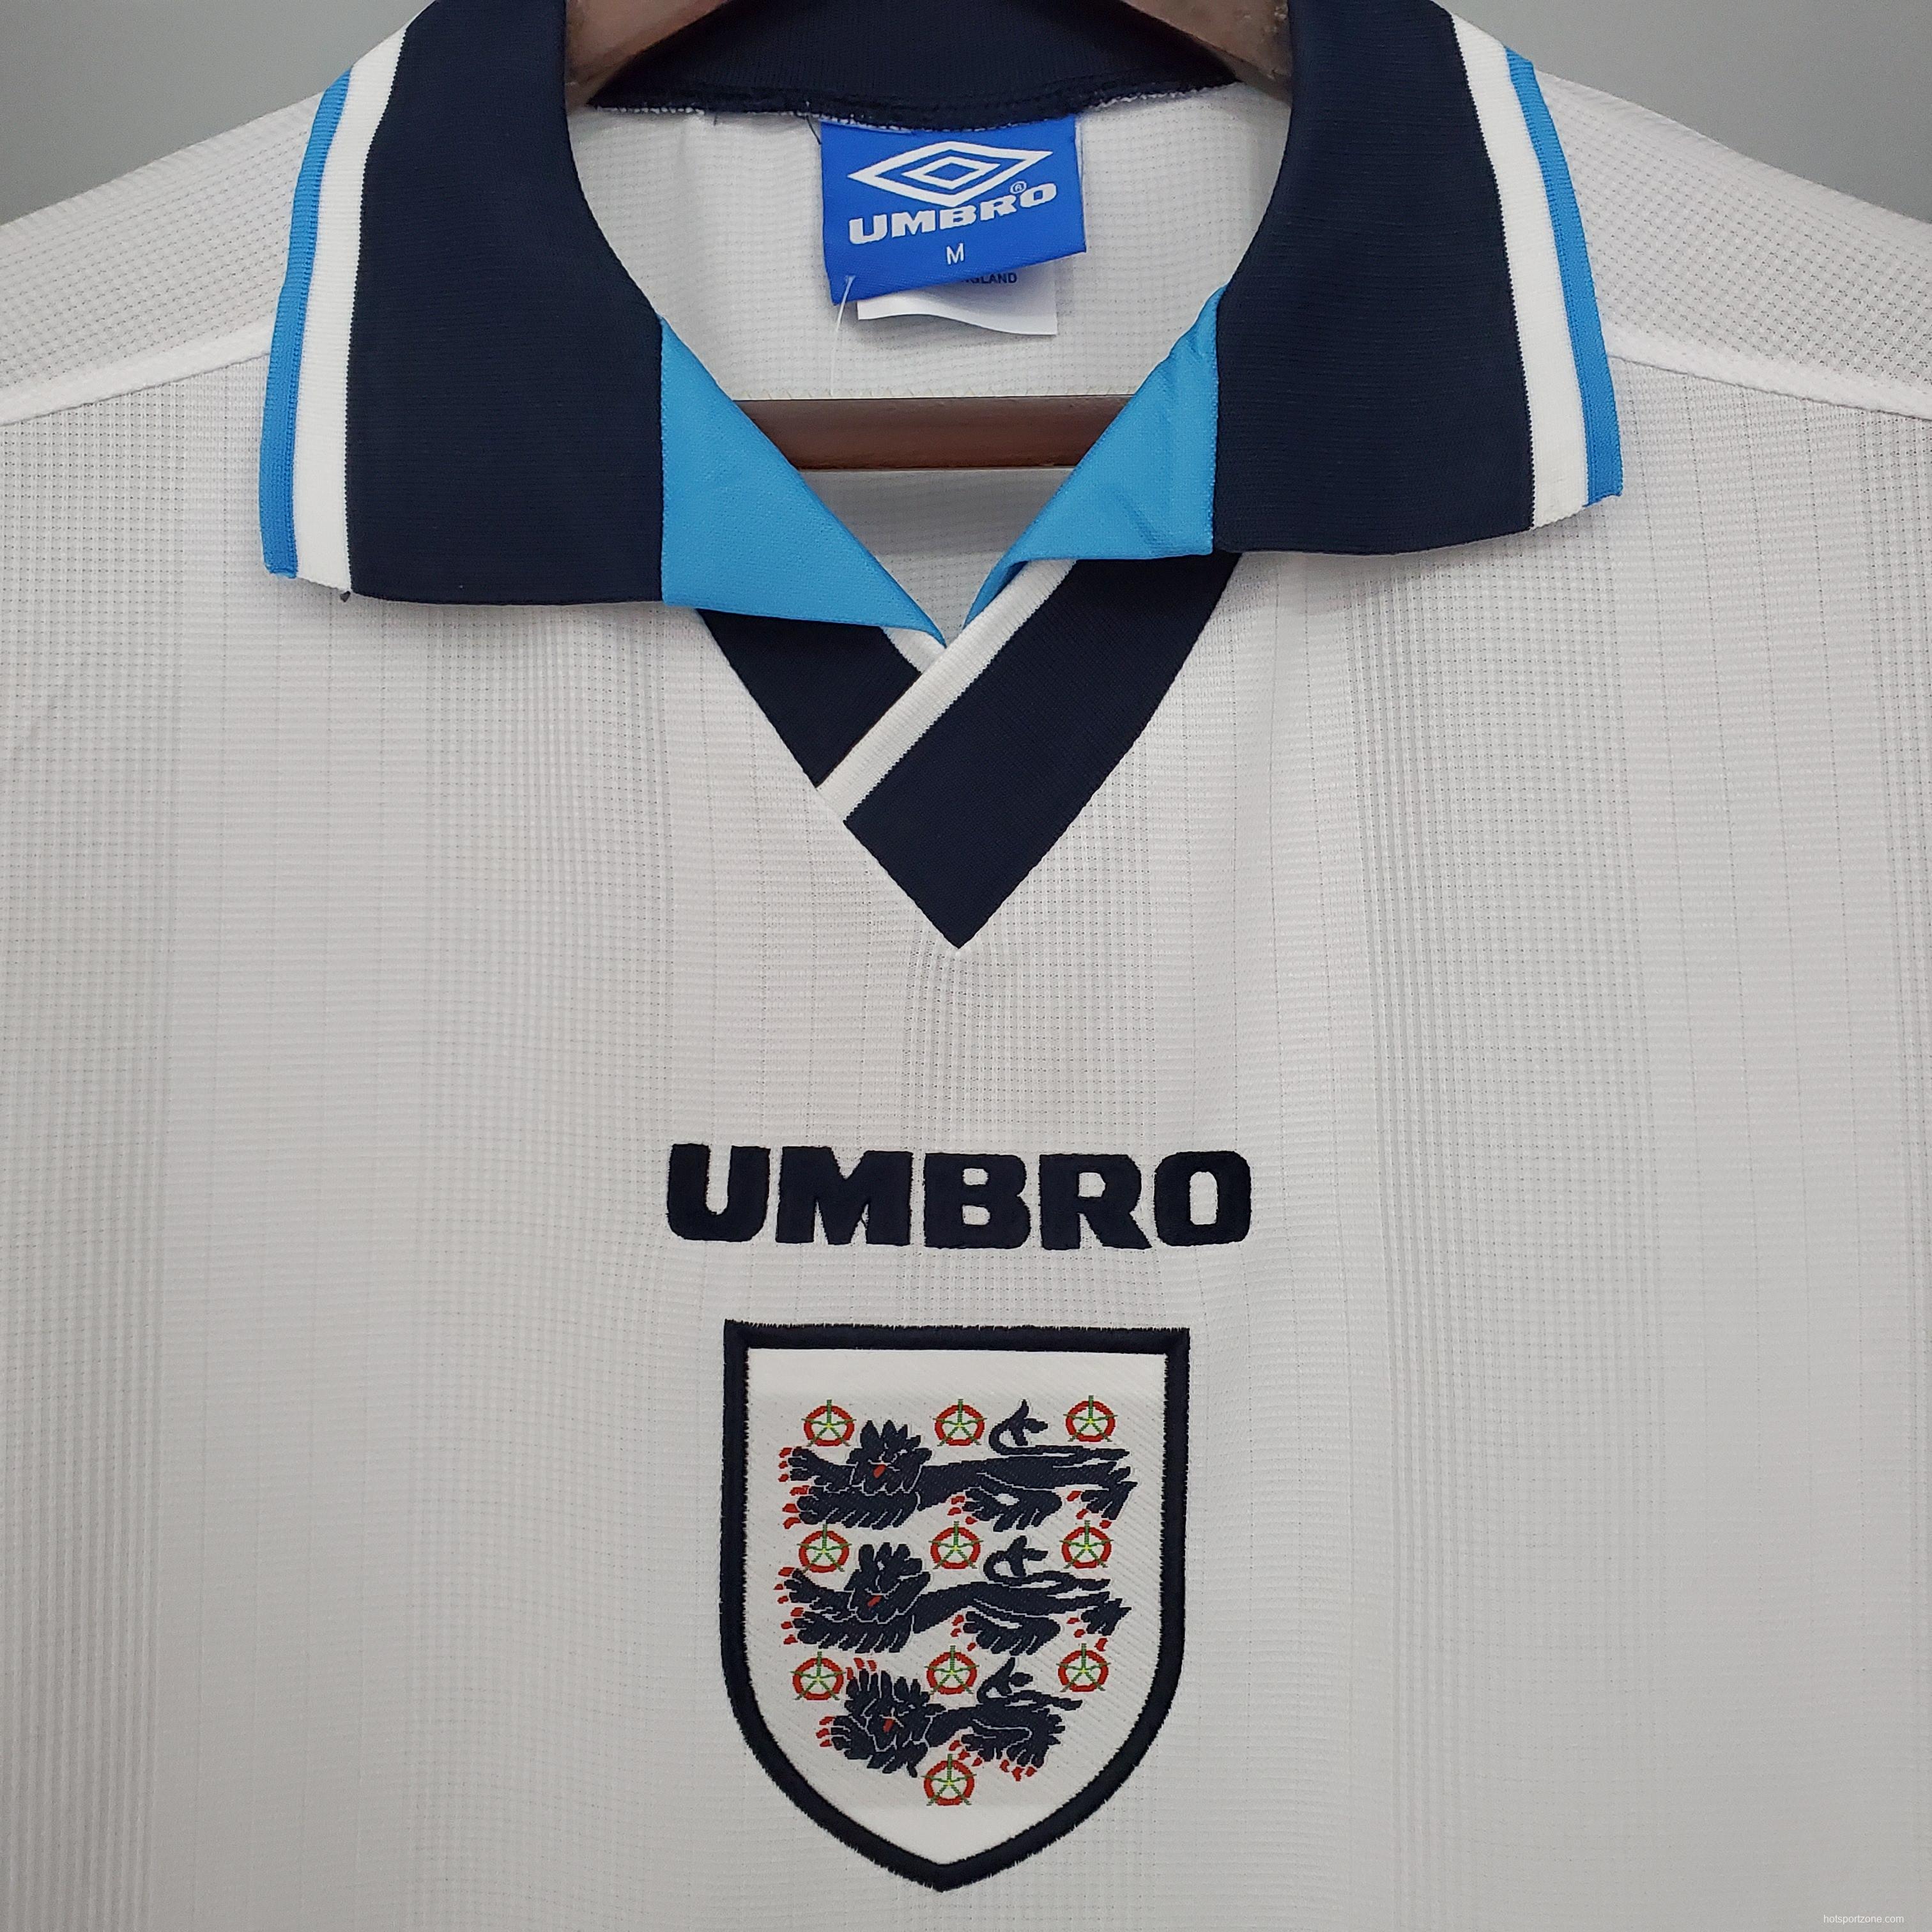 Retro England 1996 home Soccer Jersey